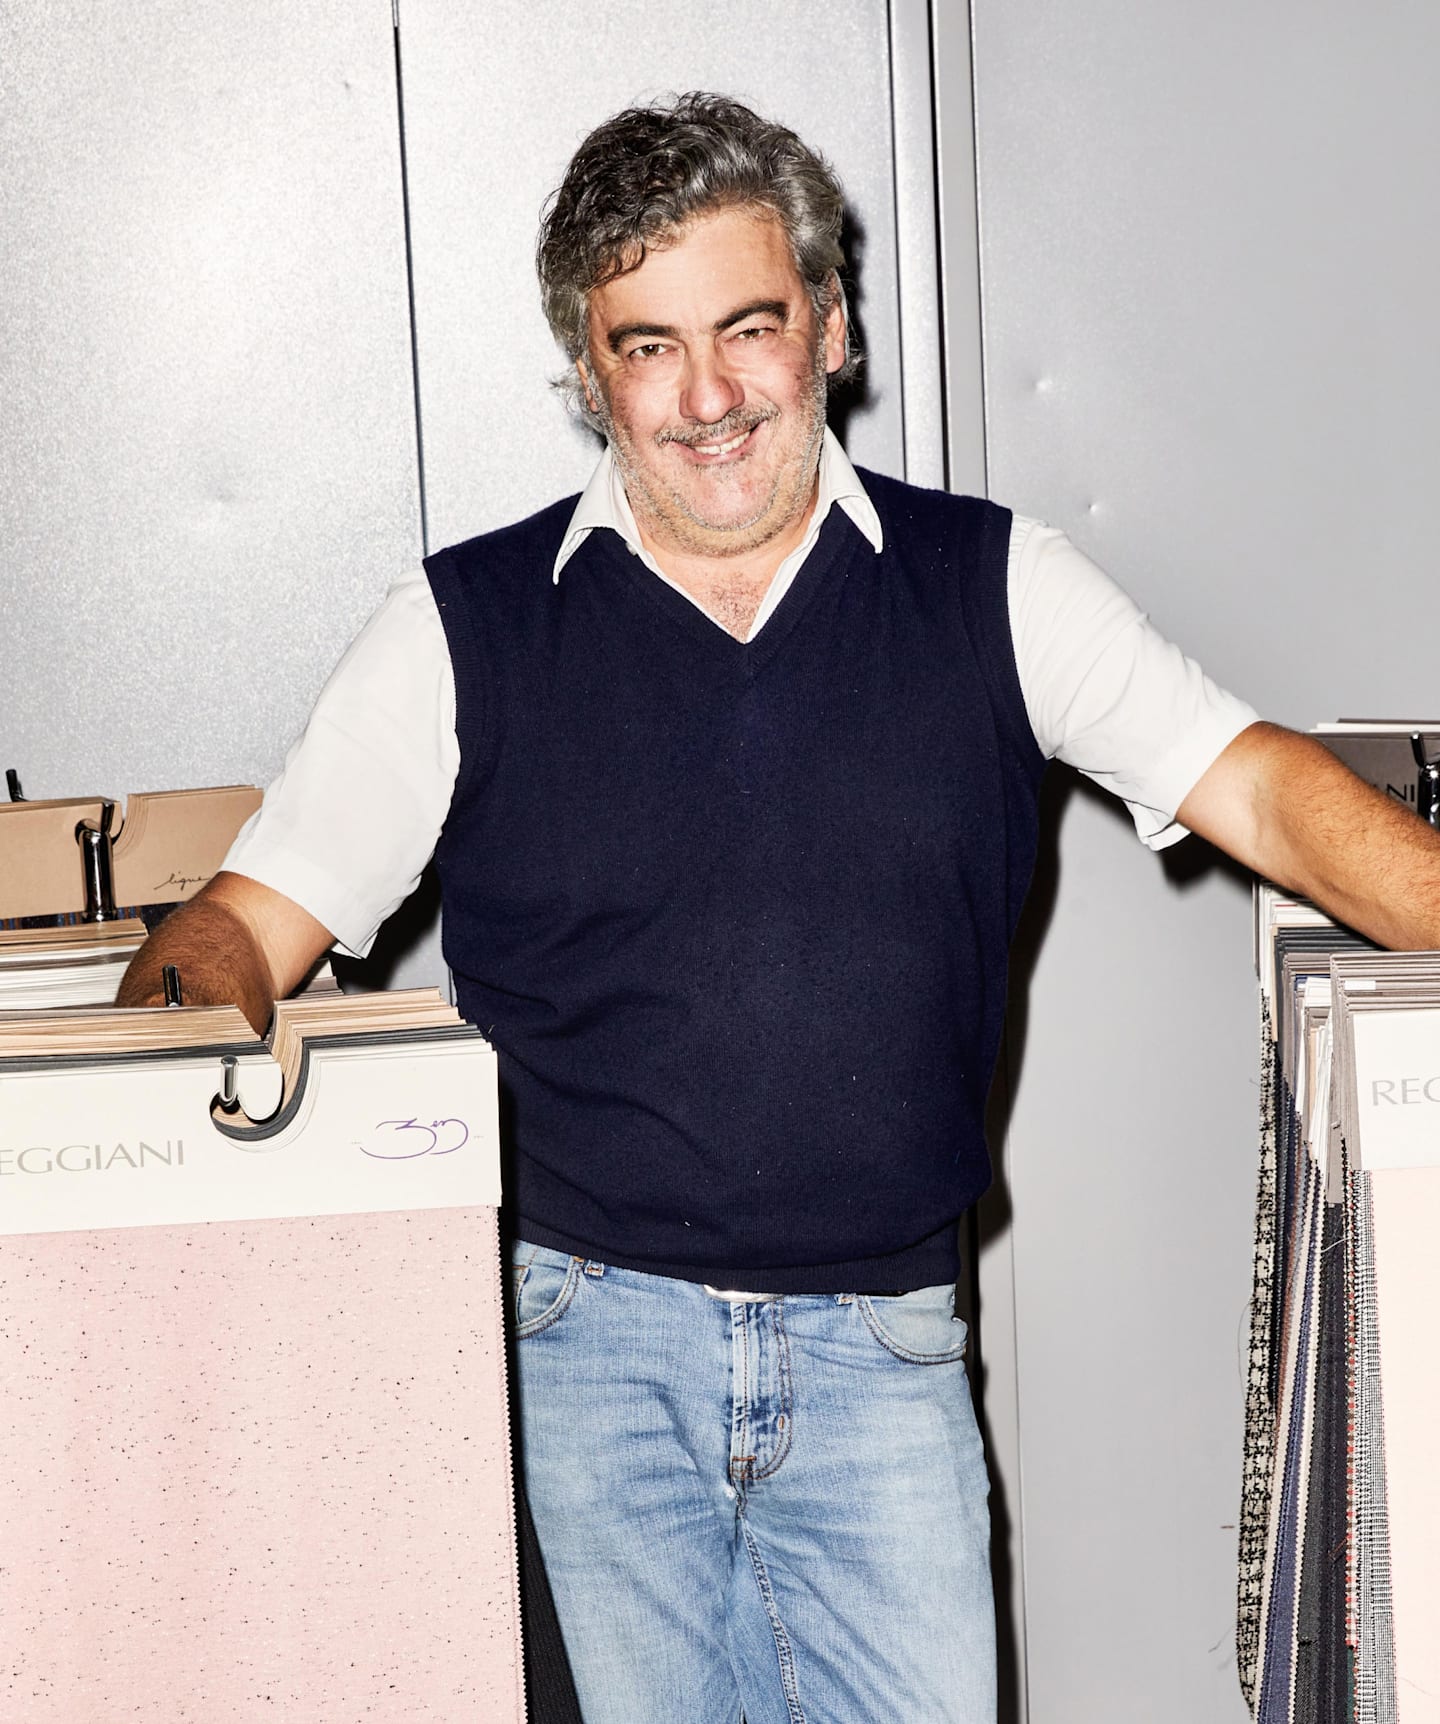 Giovanni Reggiani, CEO, designer, e figlio del fondatore Attilio.